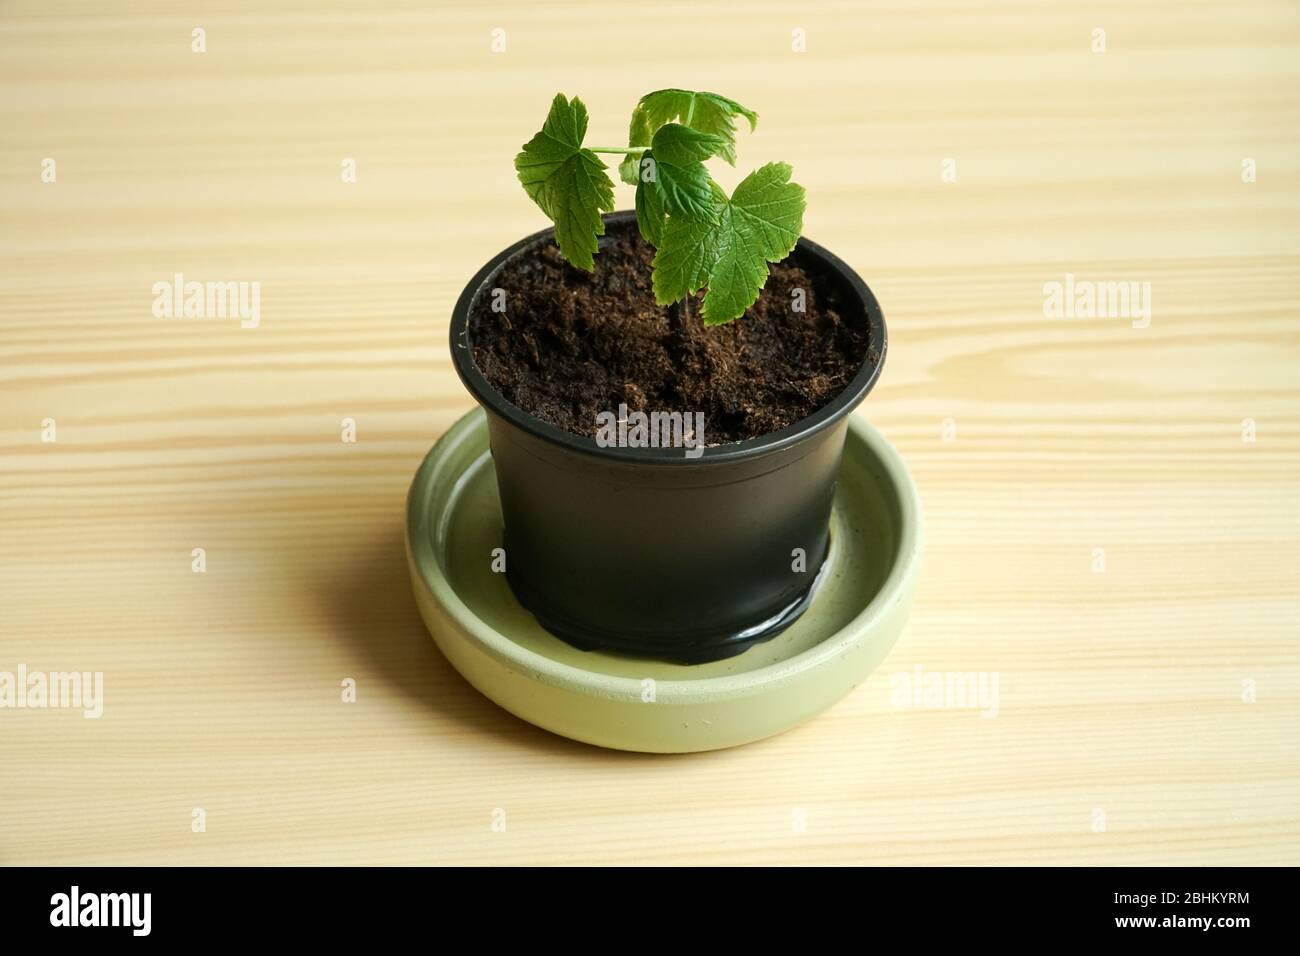 Eine Johannisbeere die kleine Keimling Ansicht in einer Nahaufnahme. Ein Blumentopf mit der jungen Pflanze auf einem Tisch. Strukturierter Hintergrund aus Holz. Stockfoto